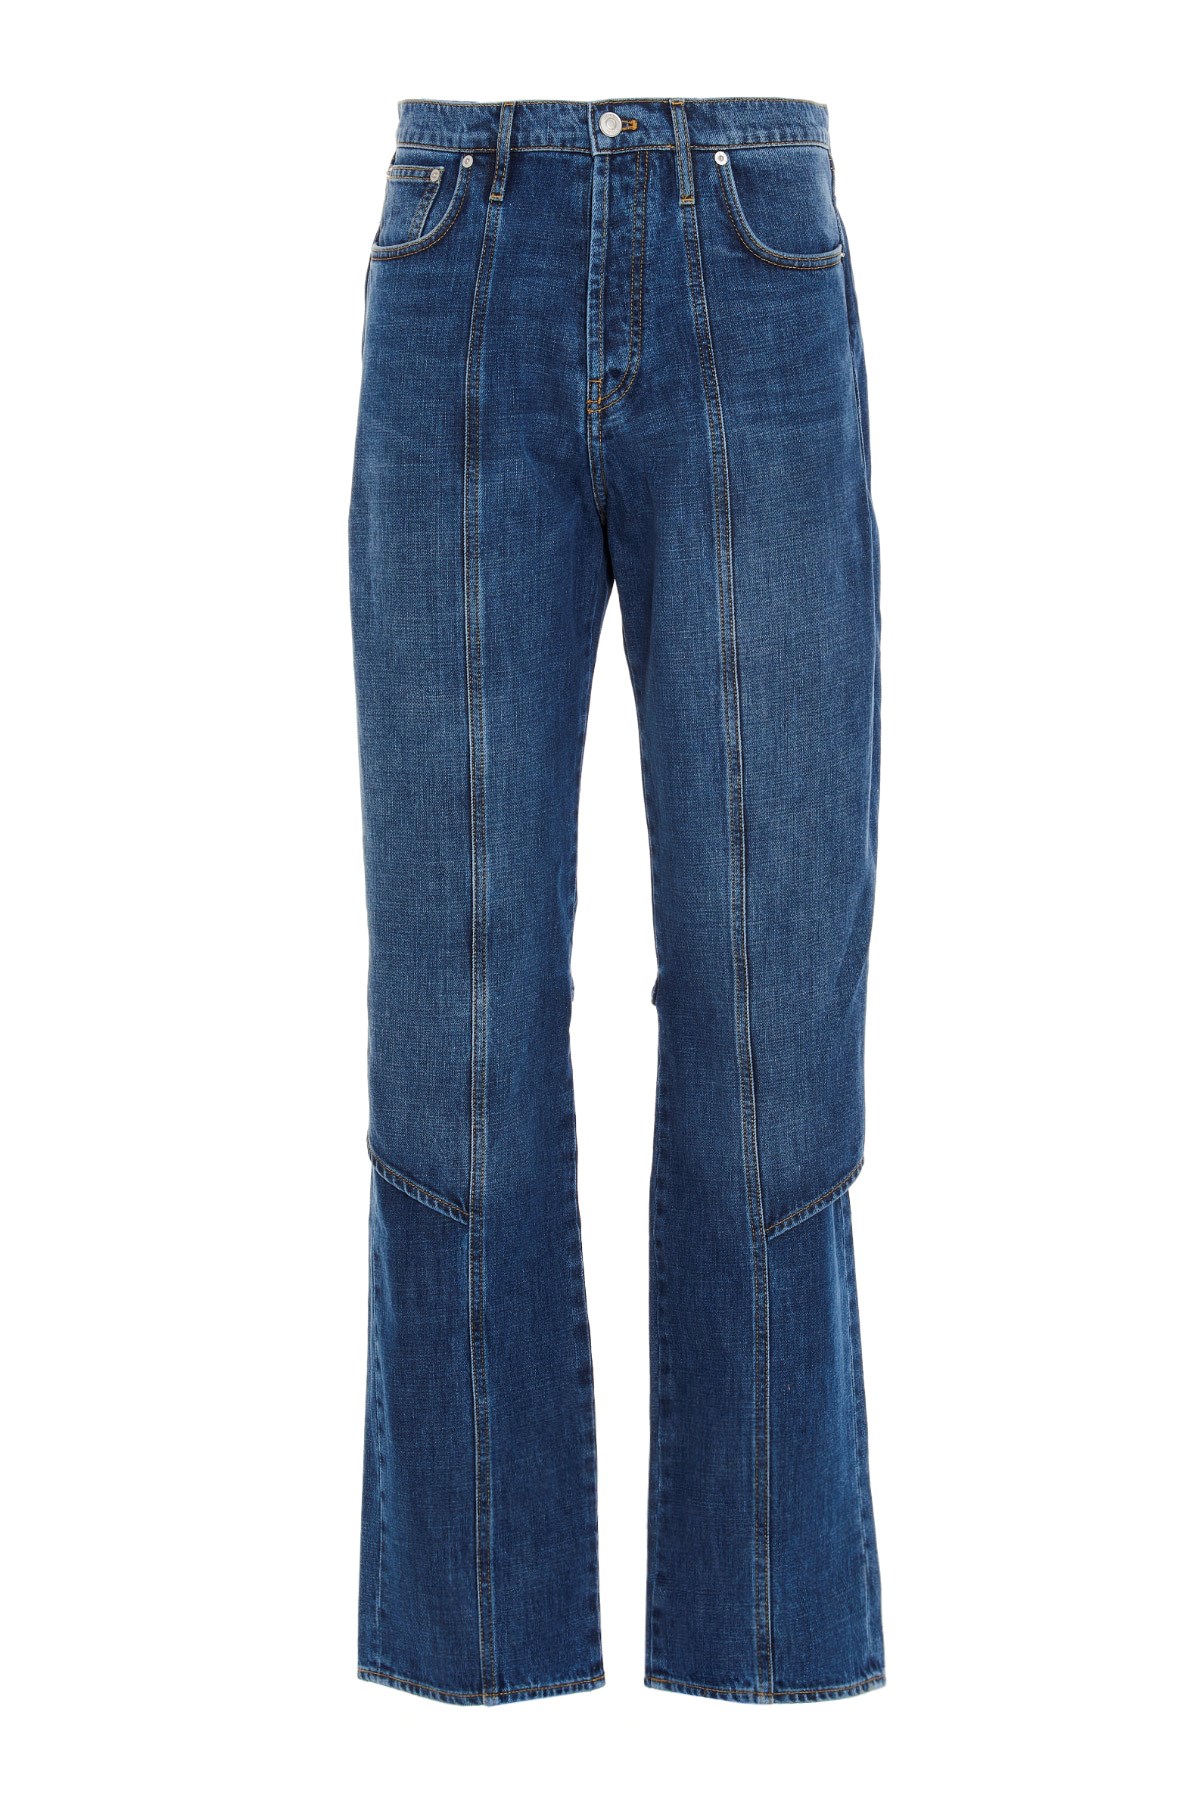 KENZO 'Apron’ Jeans